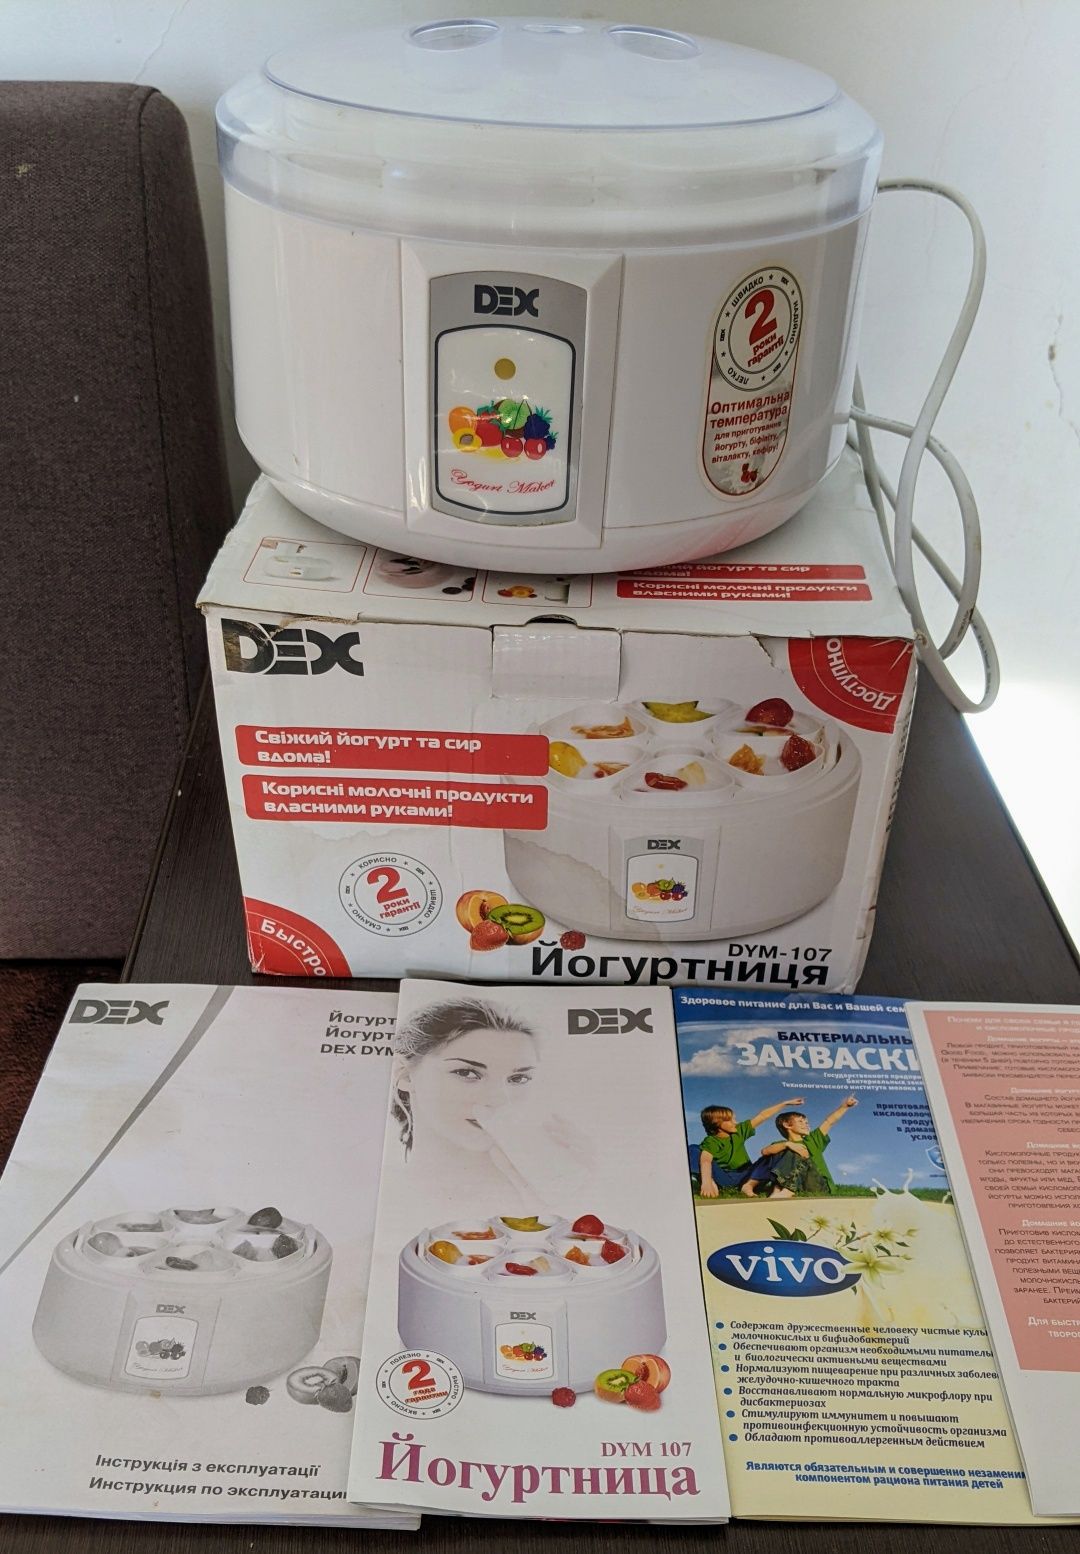 Йогуртниця Dex DYM-107 для домашнього йогурту купити